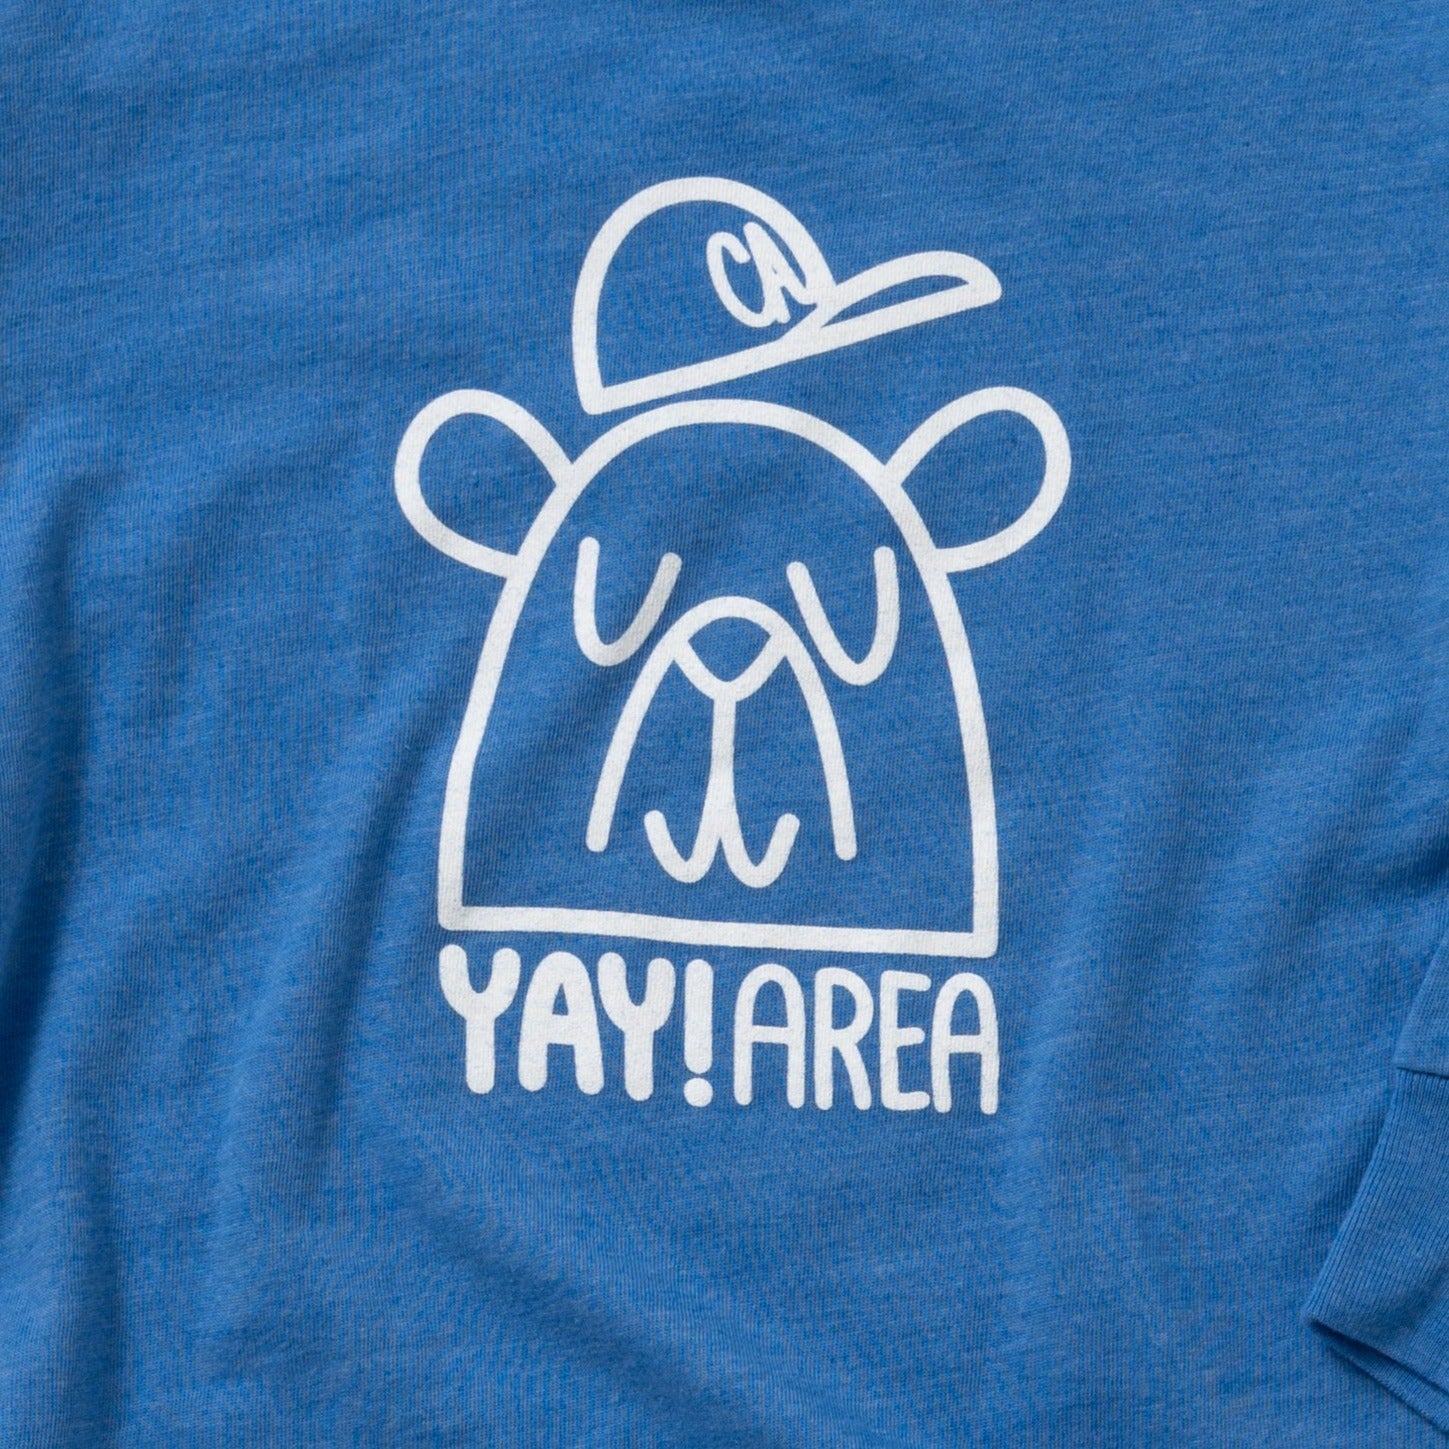 Yay Area Bear Long Sleeve T-Shirt, Heather Blue